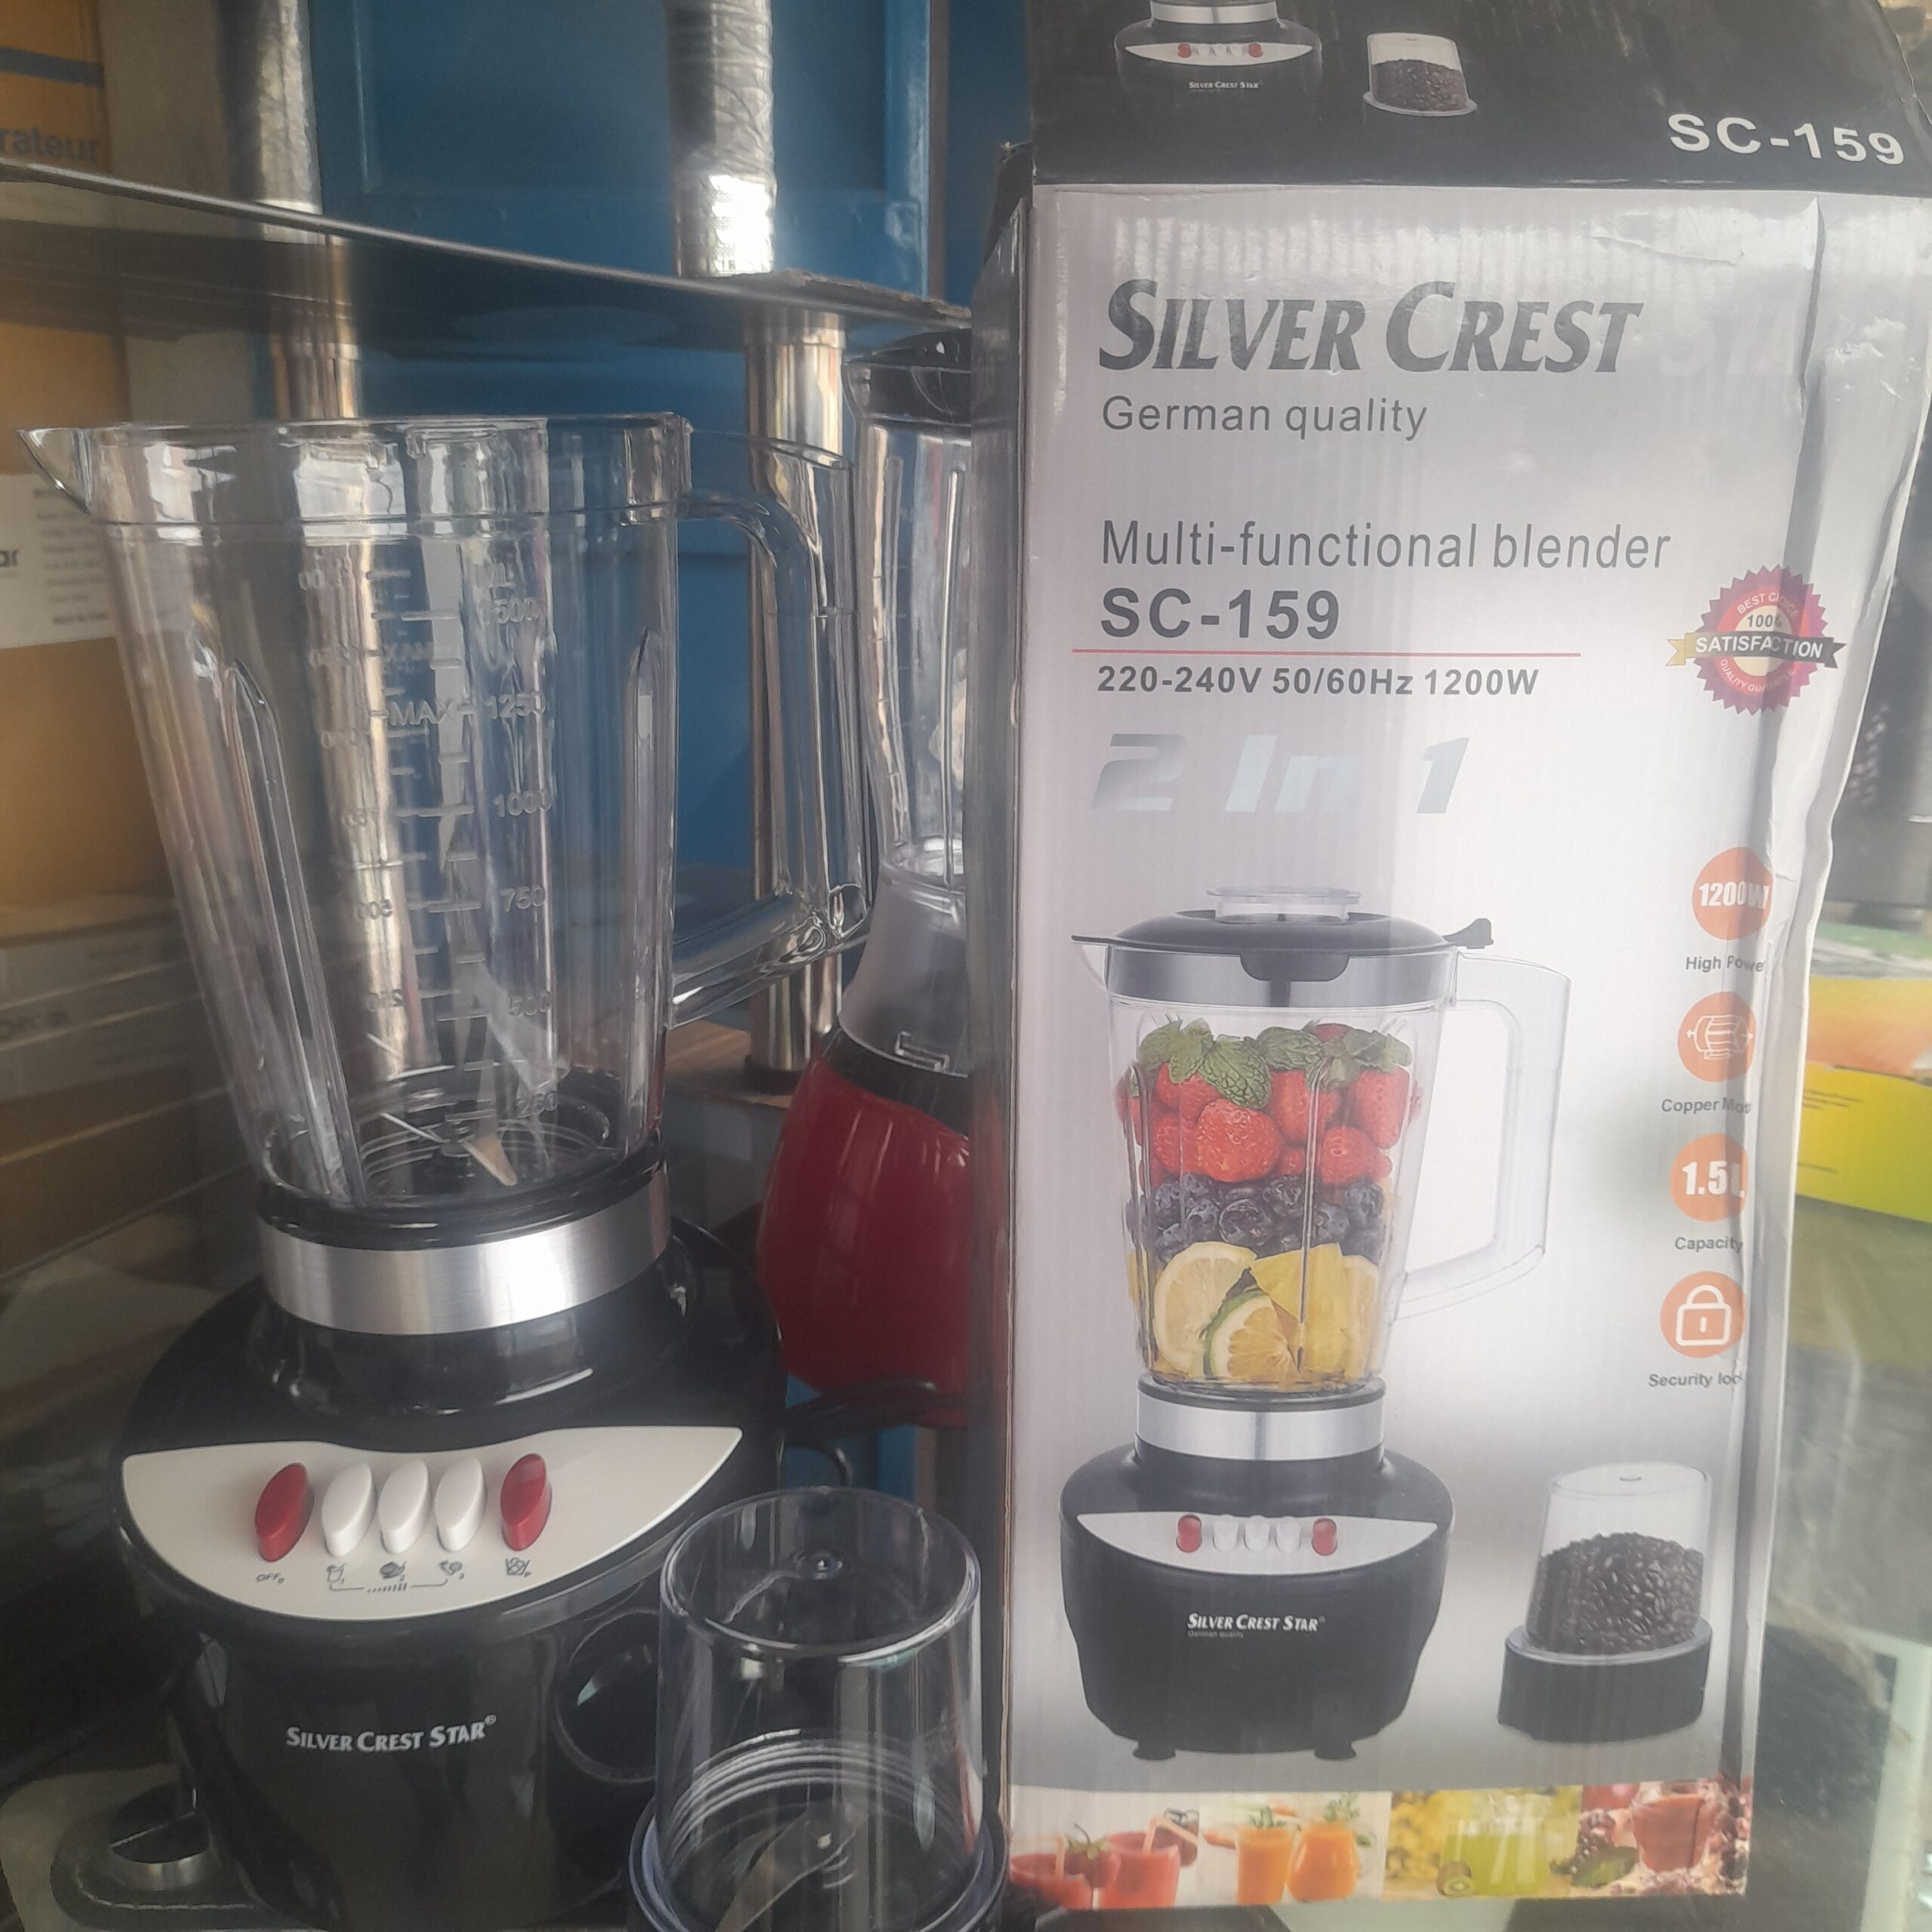 Robot mixeur Silver crest 1200 W model SC-159